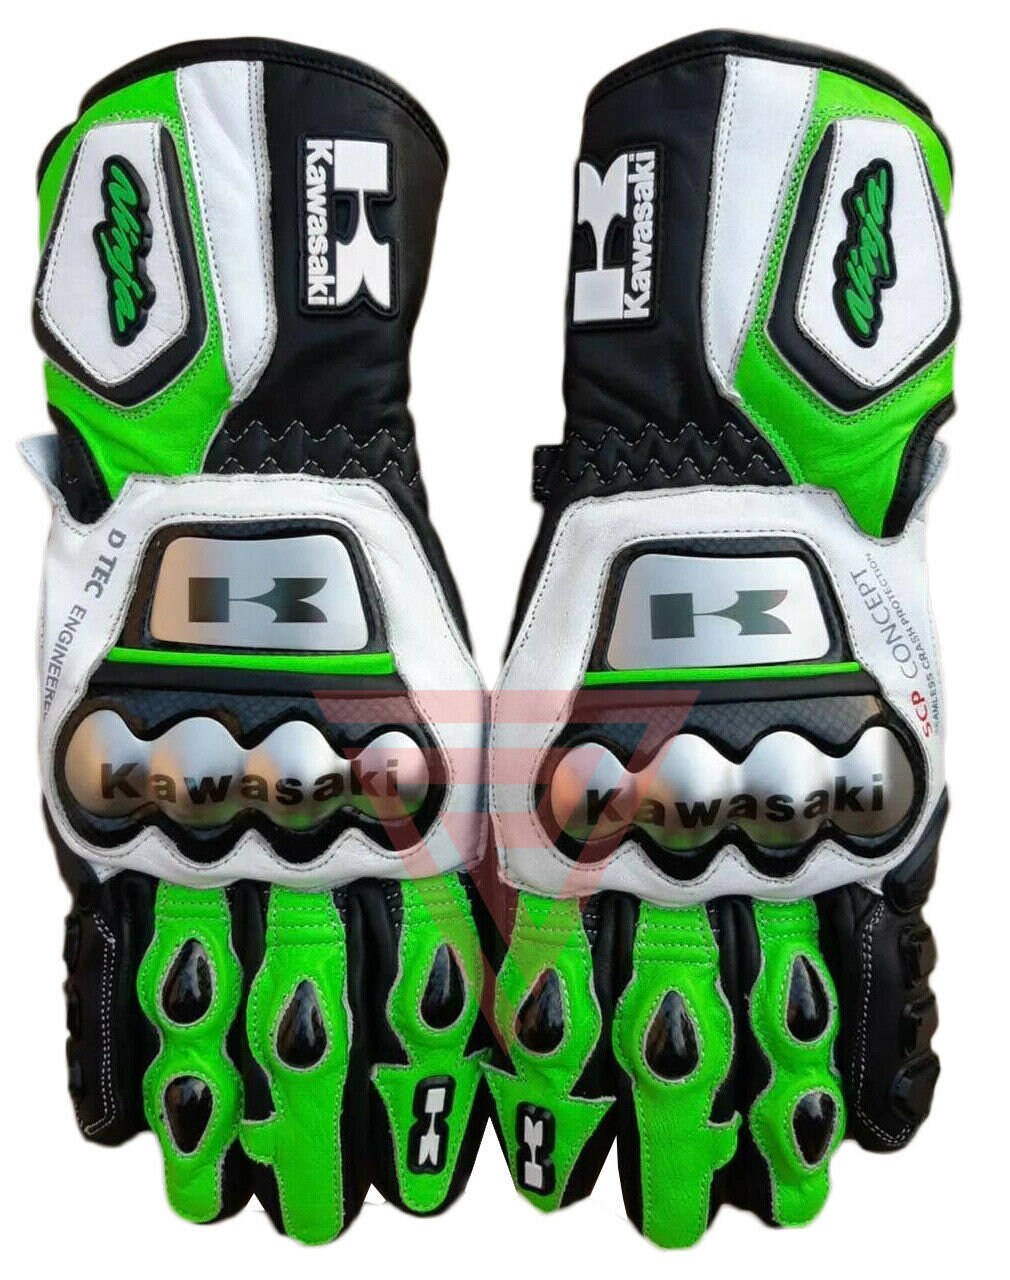 Accessoires Handschoenen & wanten Sporthandschoenen Nieuwe Kawasaki motorfiets motogp racing lederen handschoenen 